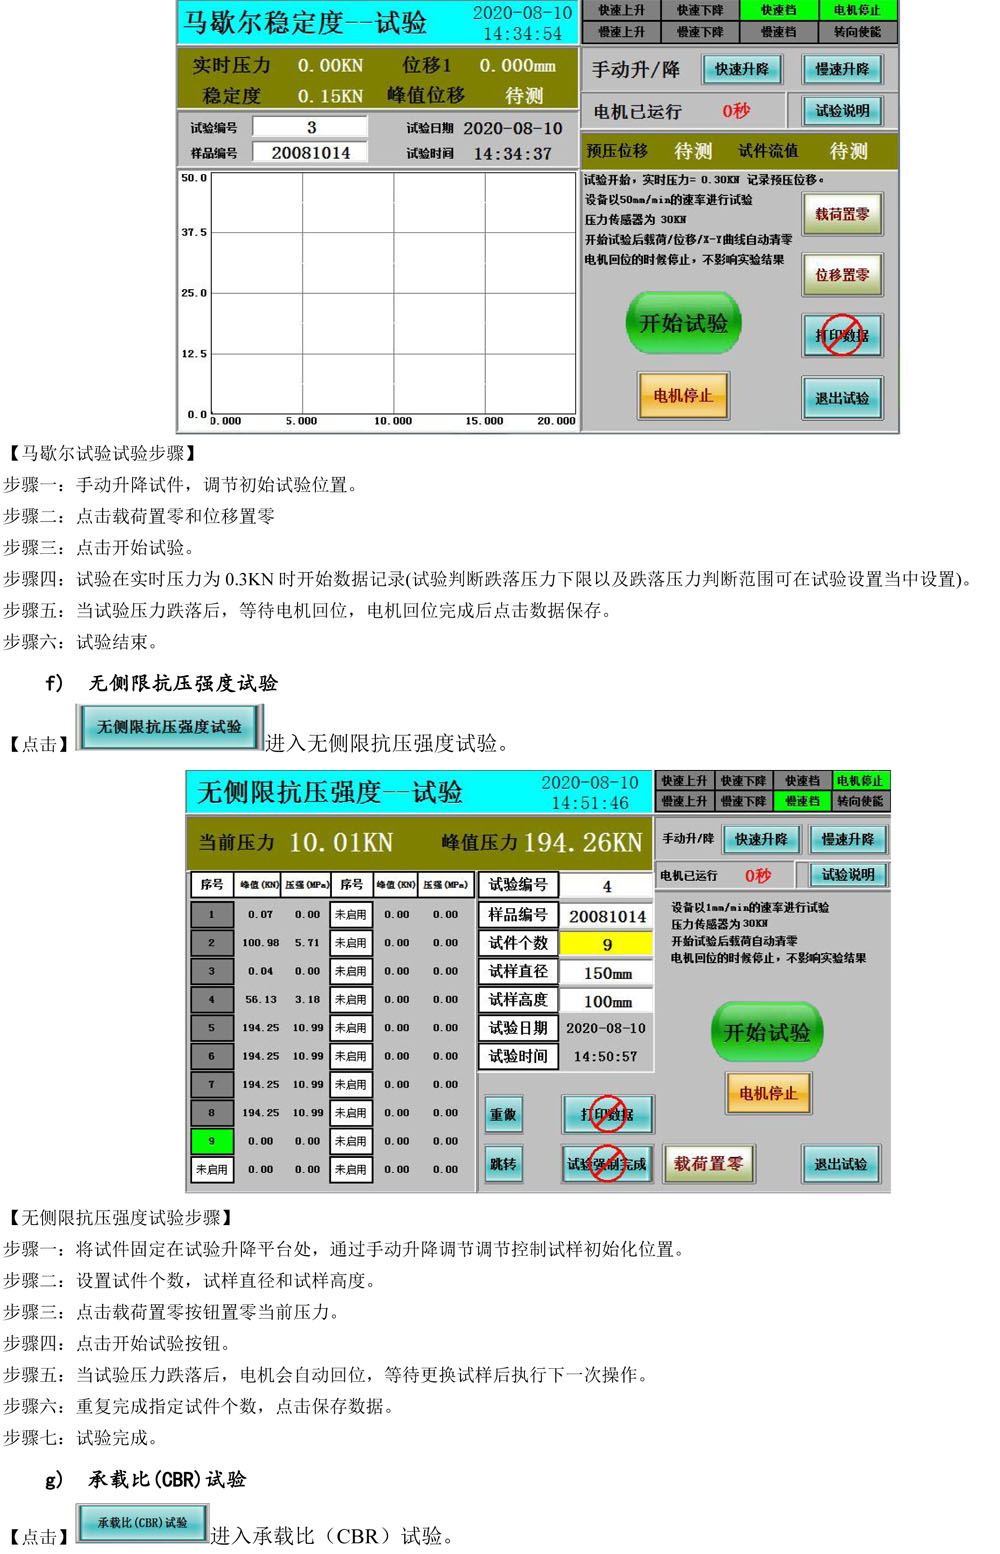 路强仪控制系统使用说明书  V1.0-23.jpg